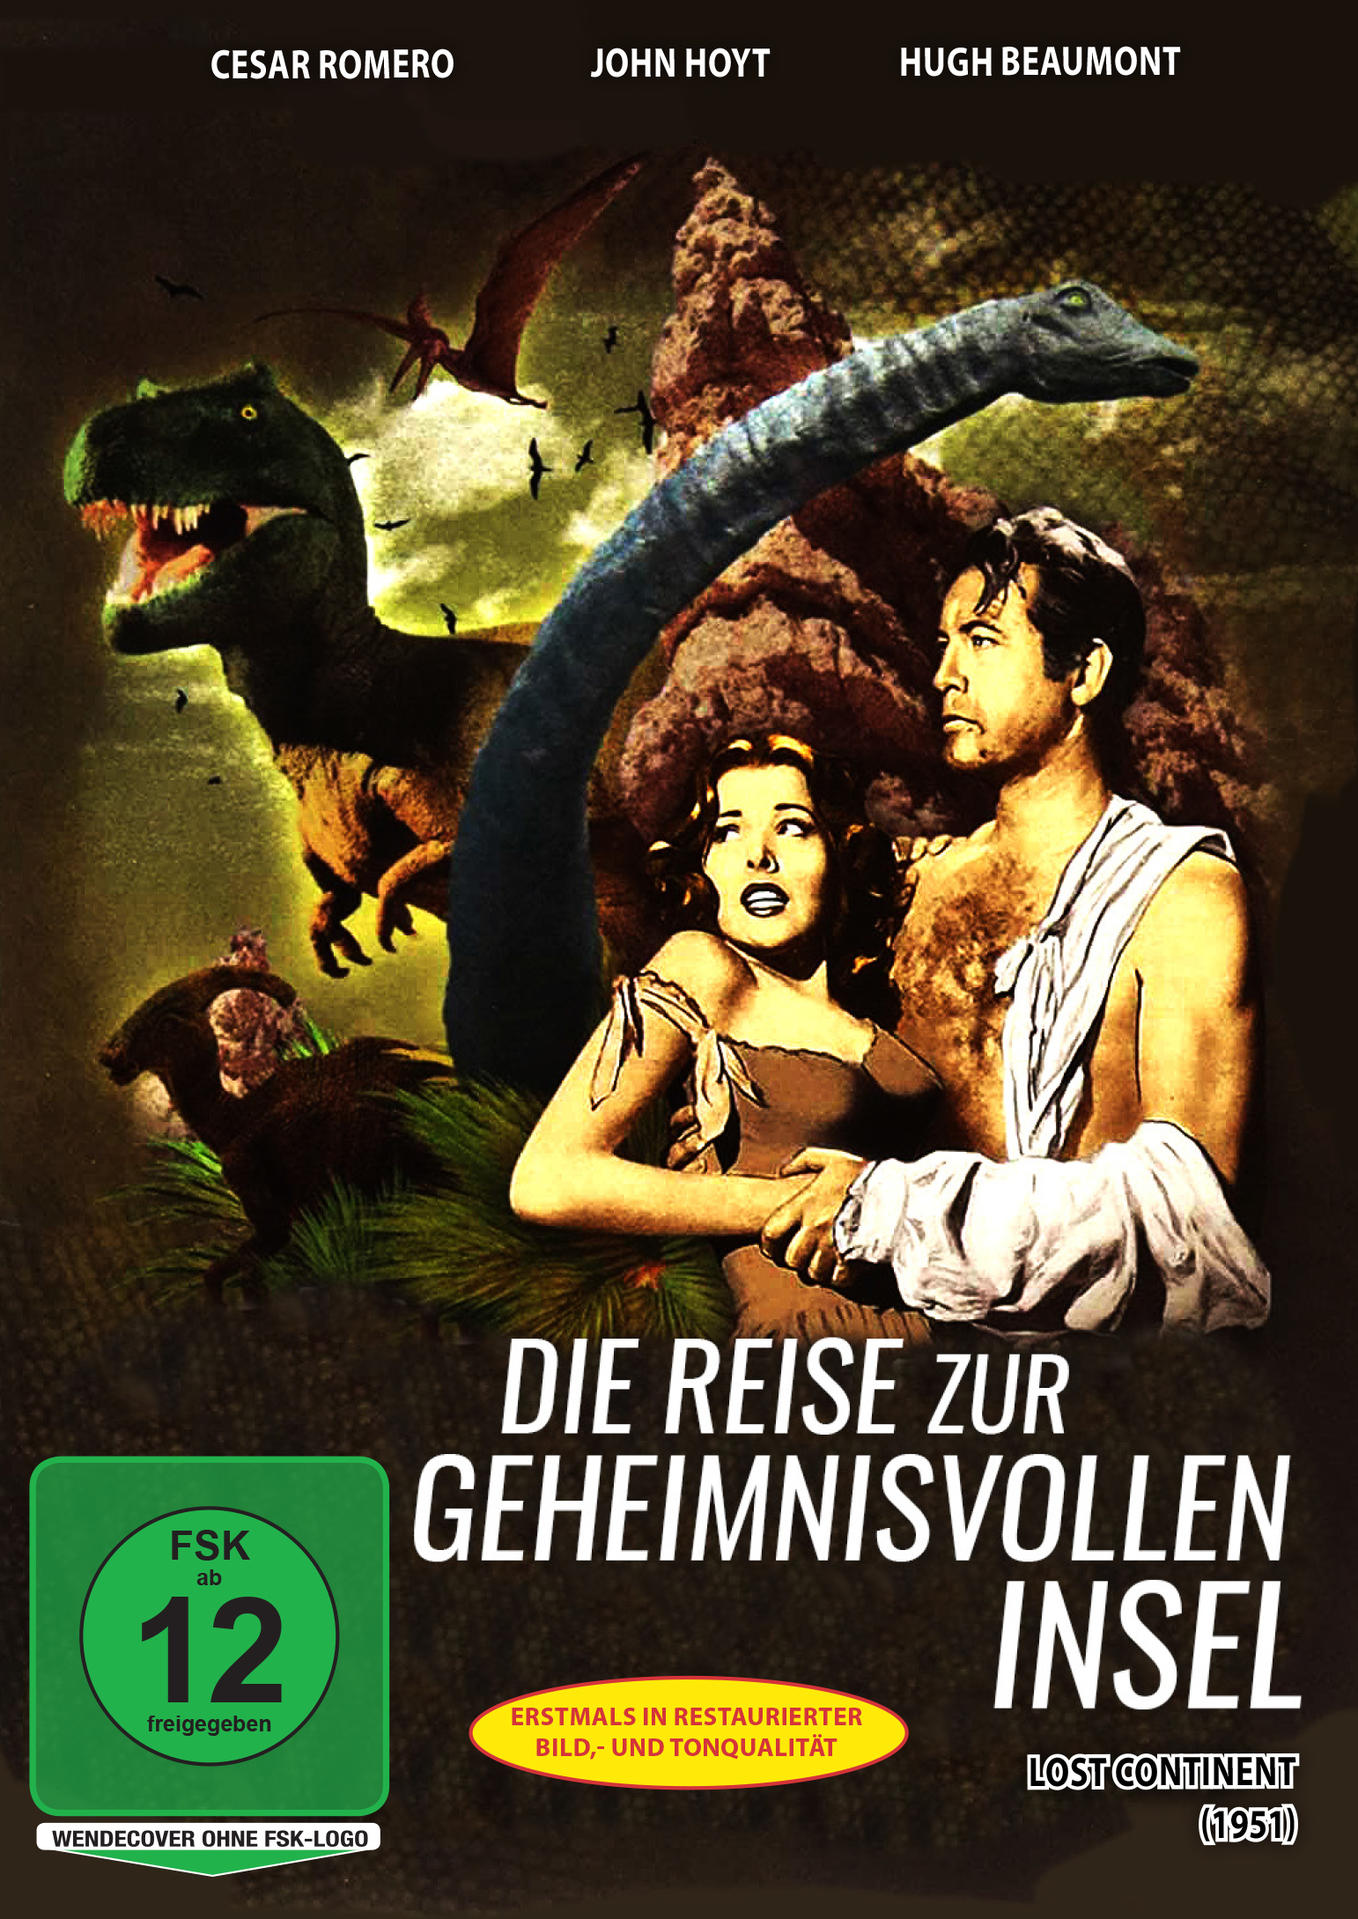 Jules Verne Insel DVD geheimnisvollen - zur Reise Die